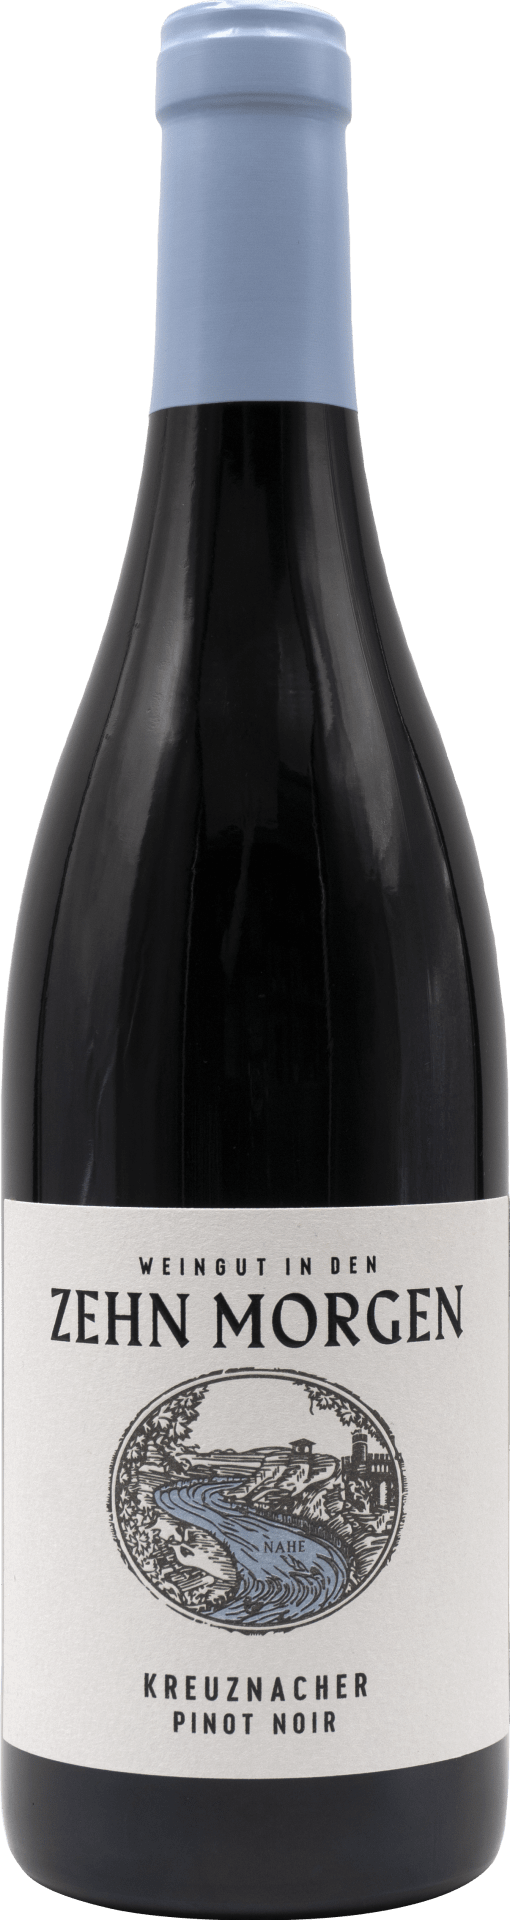 Kreuznacher Pinot Noir Zehnm 